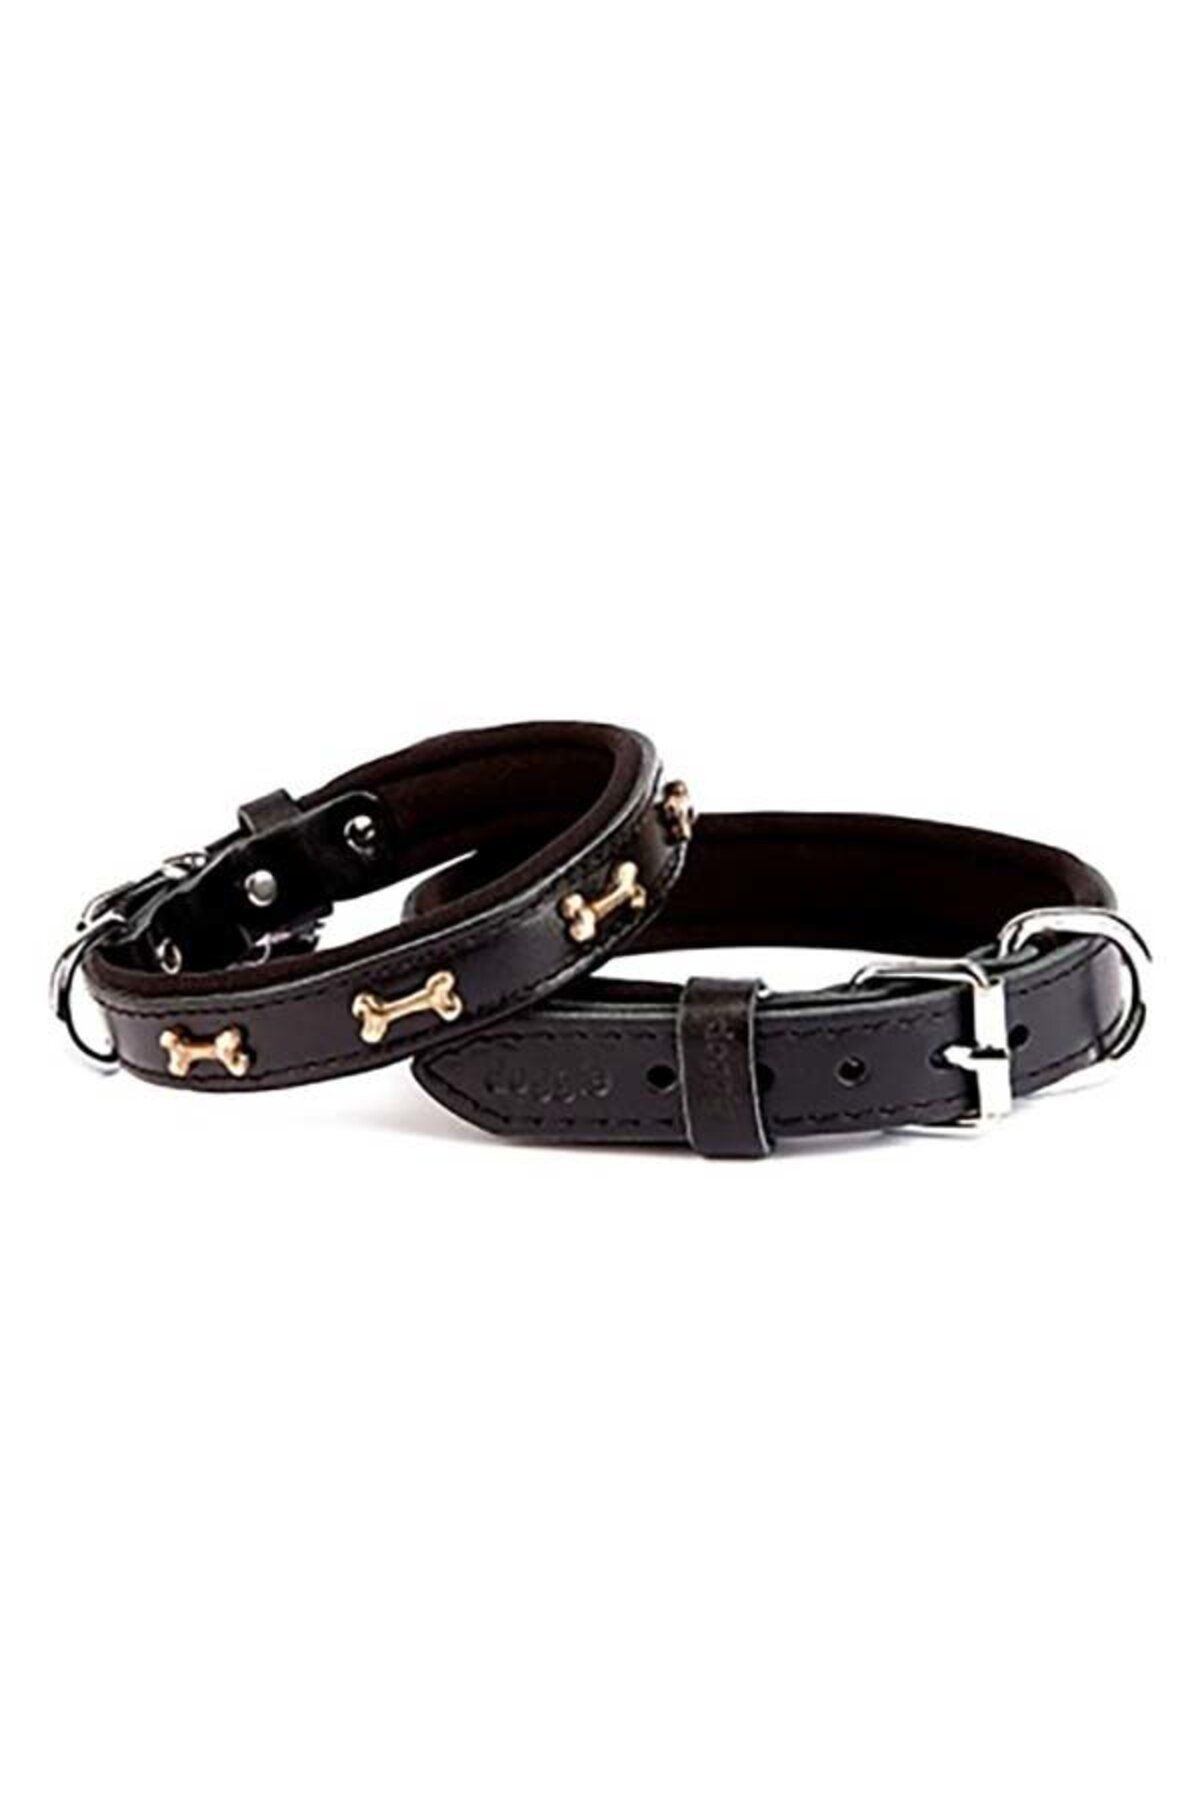 Doggie Comfort Deri Kemik Süslü Köpek Boyun Tasması Medium Siyah 2x35-40 Cm